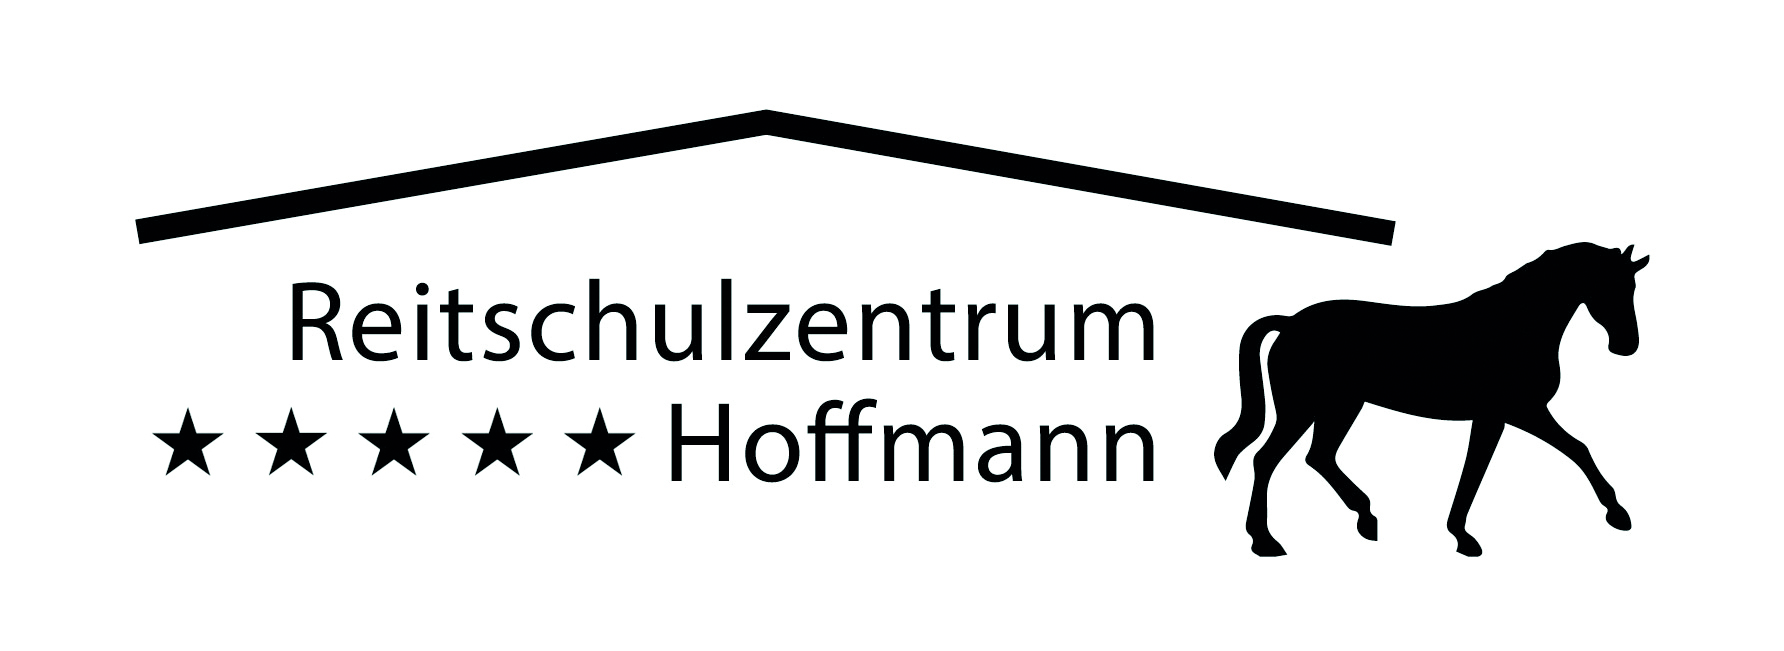 Reitschulzentrum Hoffmann